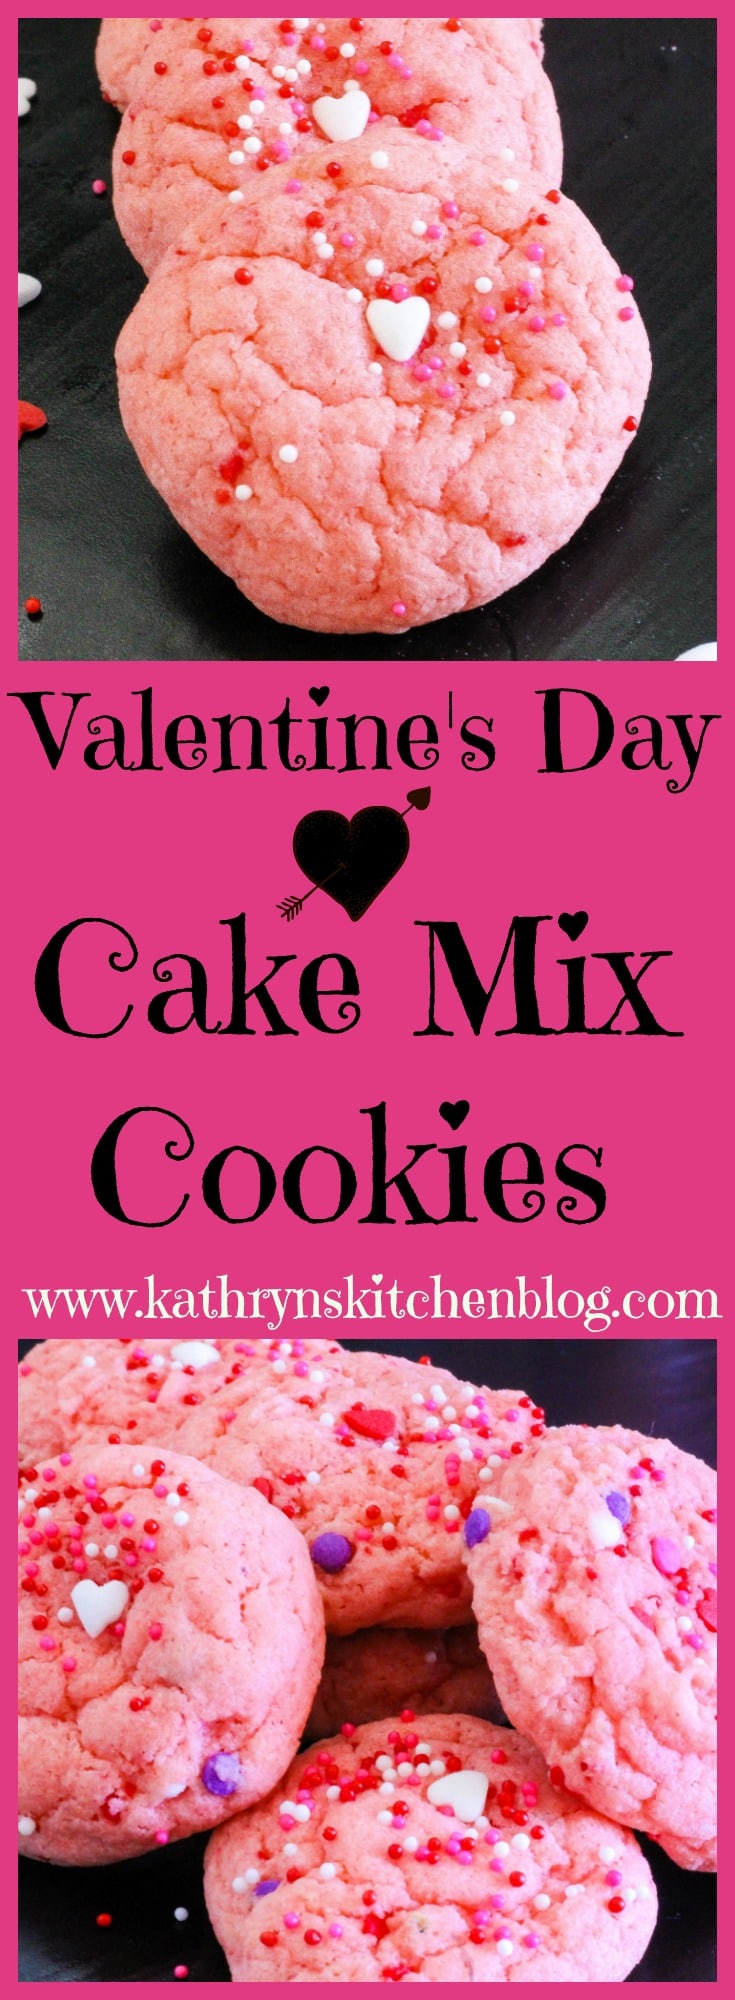 Valentine's Day Cake Mix Cookies - Kathryn's Kitchen